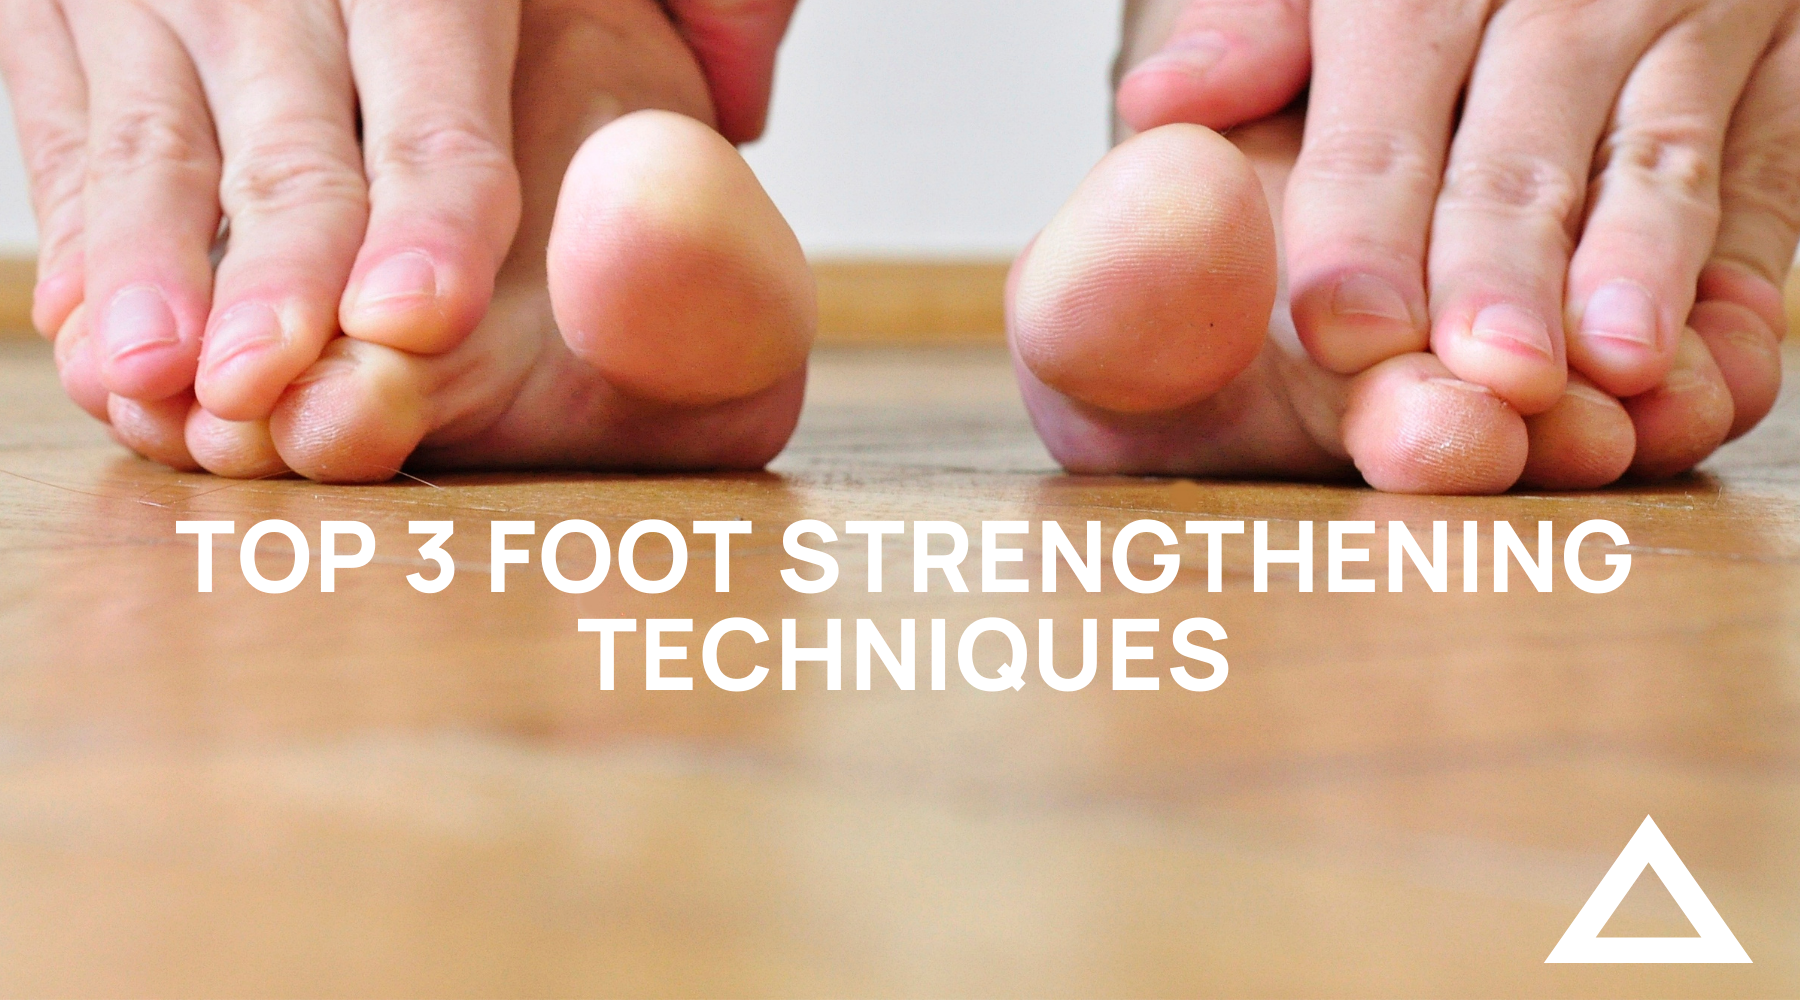 Top 3 Foot Strengthening Techniques